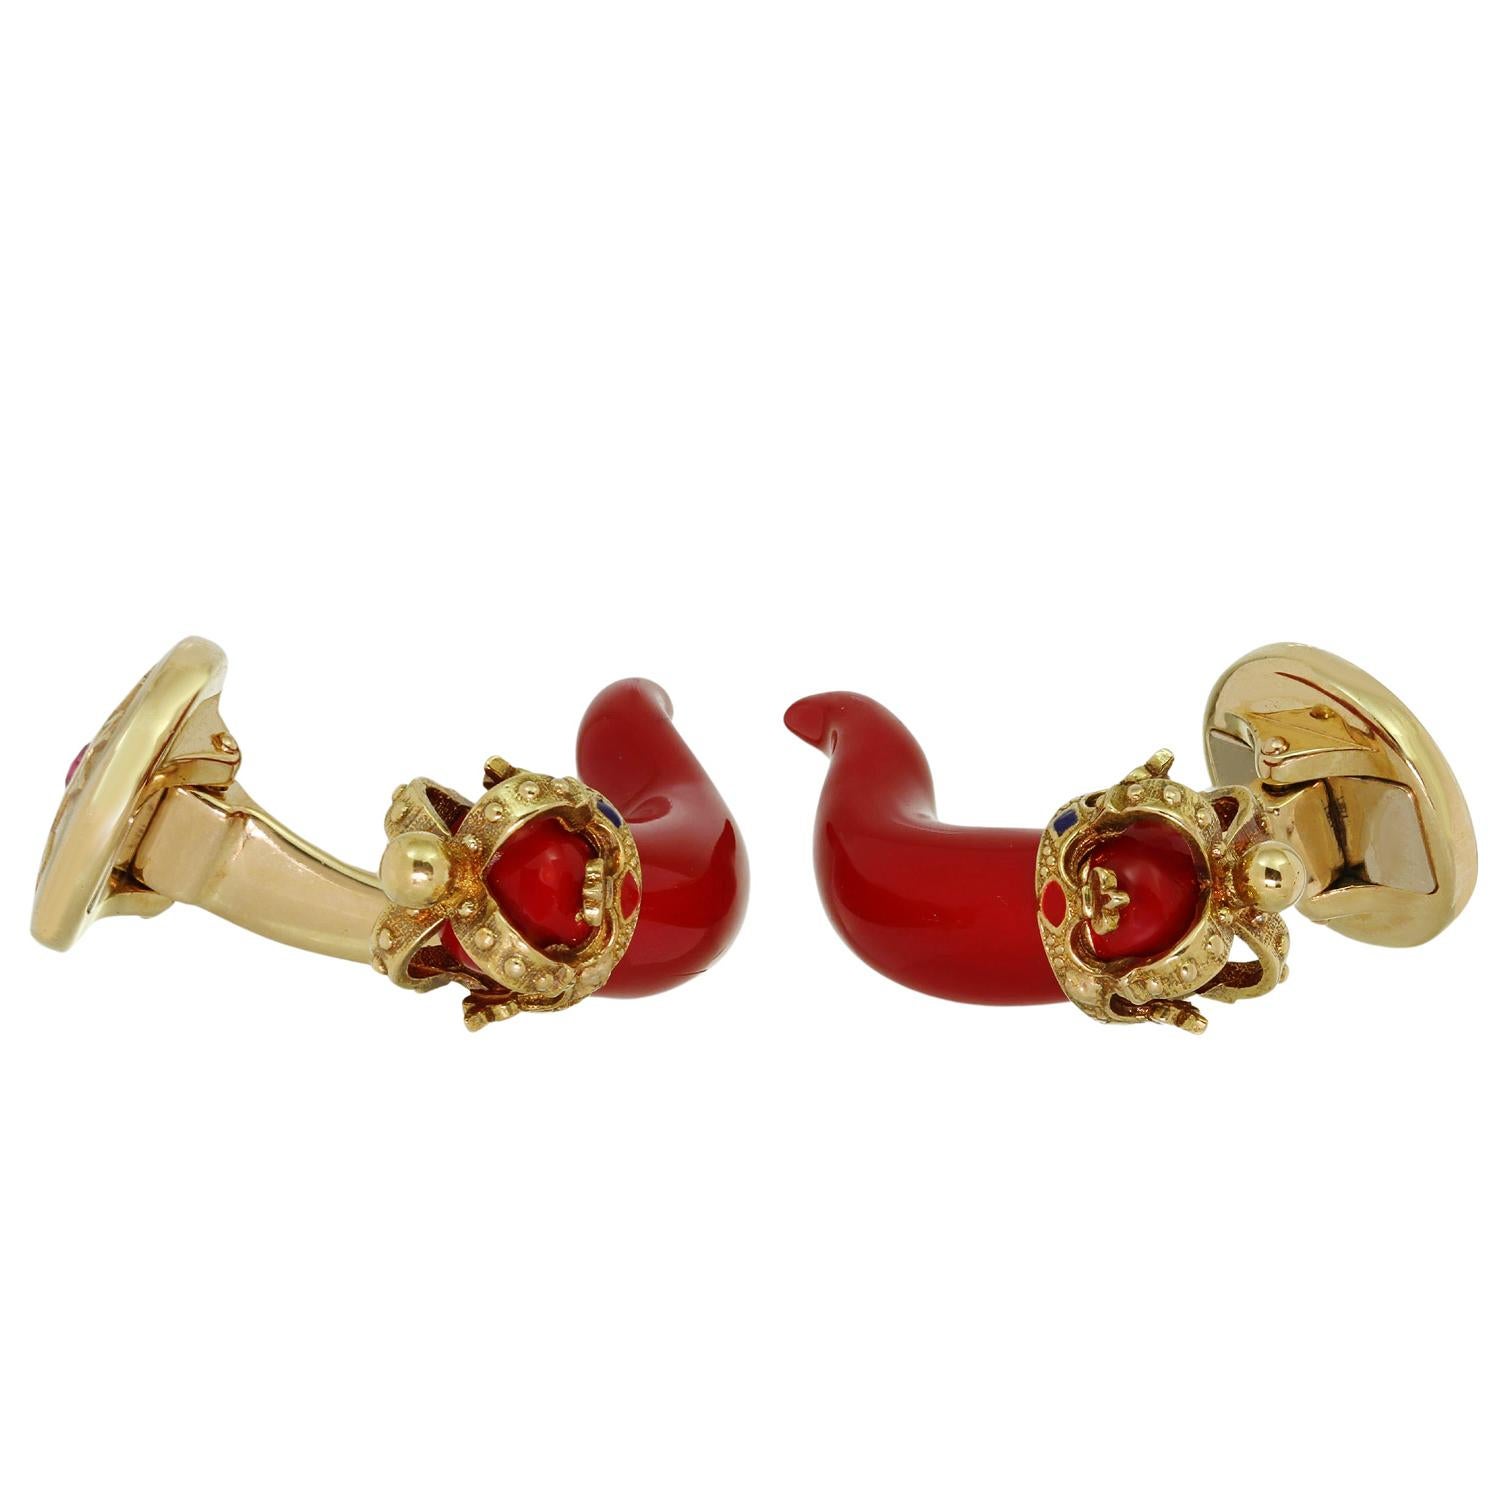 Ces magnifiques boutons de manchette Dolce & Gabbana sont réalisés en or jaune 18 carats et présentent des amulettes en corne émaillée rouge avec des couronnes en or rehaussées de motifs émaillés et de rubis rouges d'une valeur estimée à 0,09 carat.